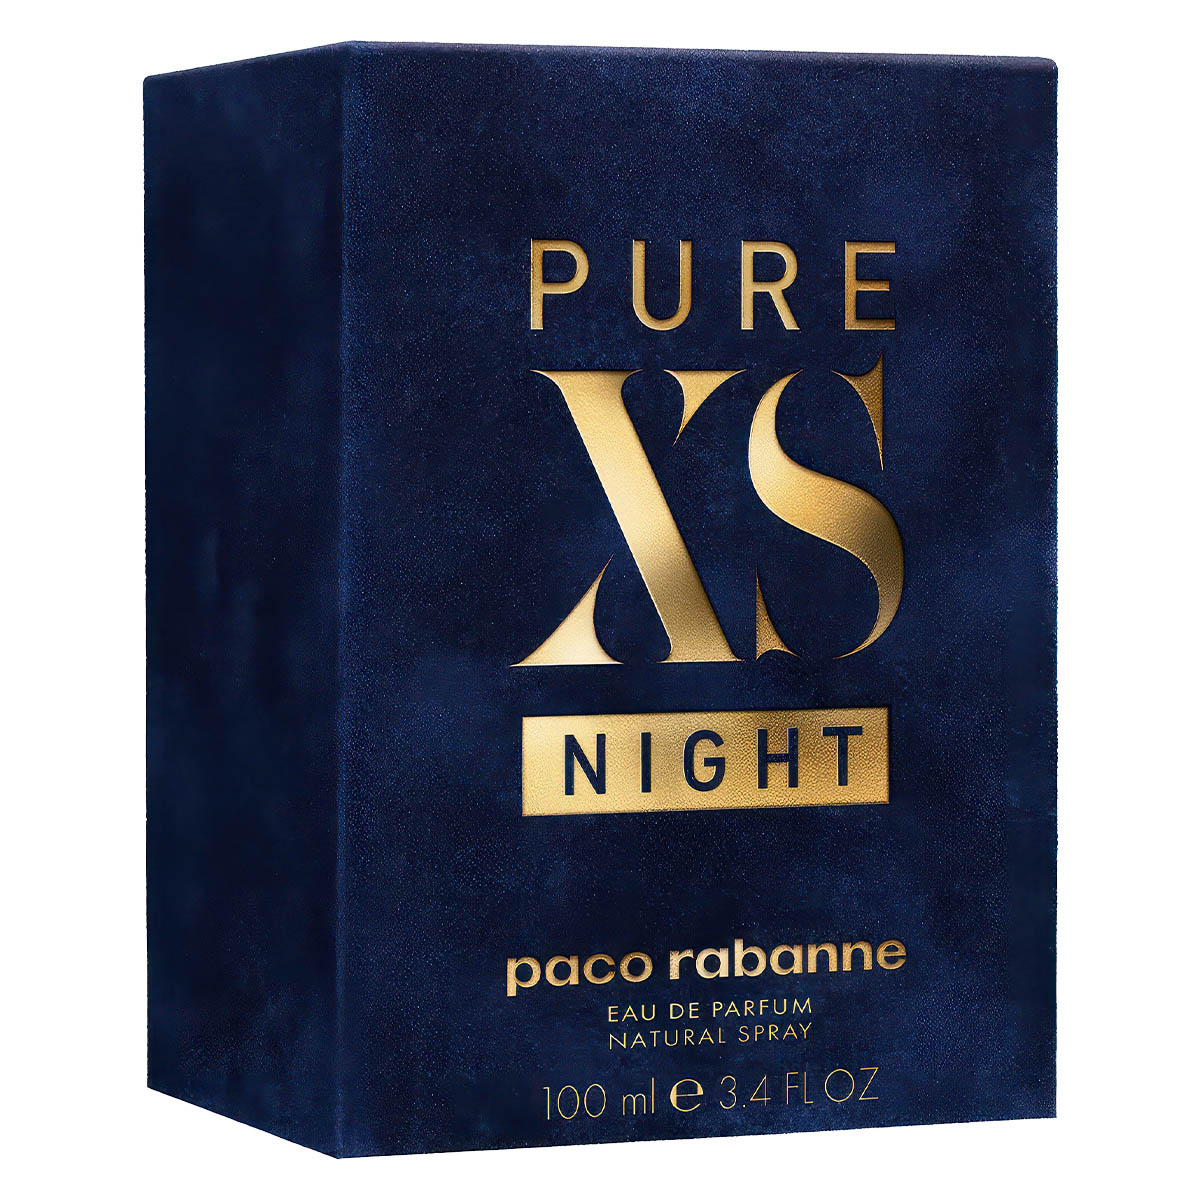 PURE XS NIGHT EAU DE PARFUM